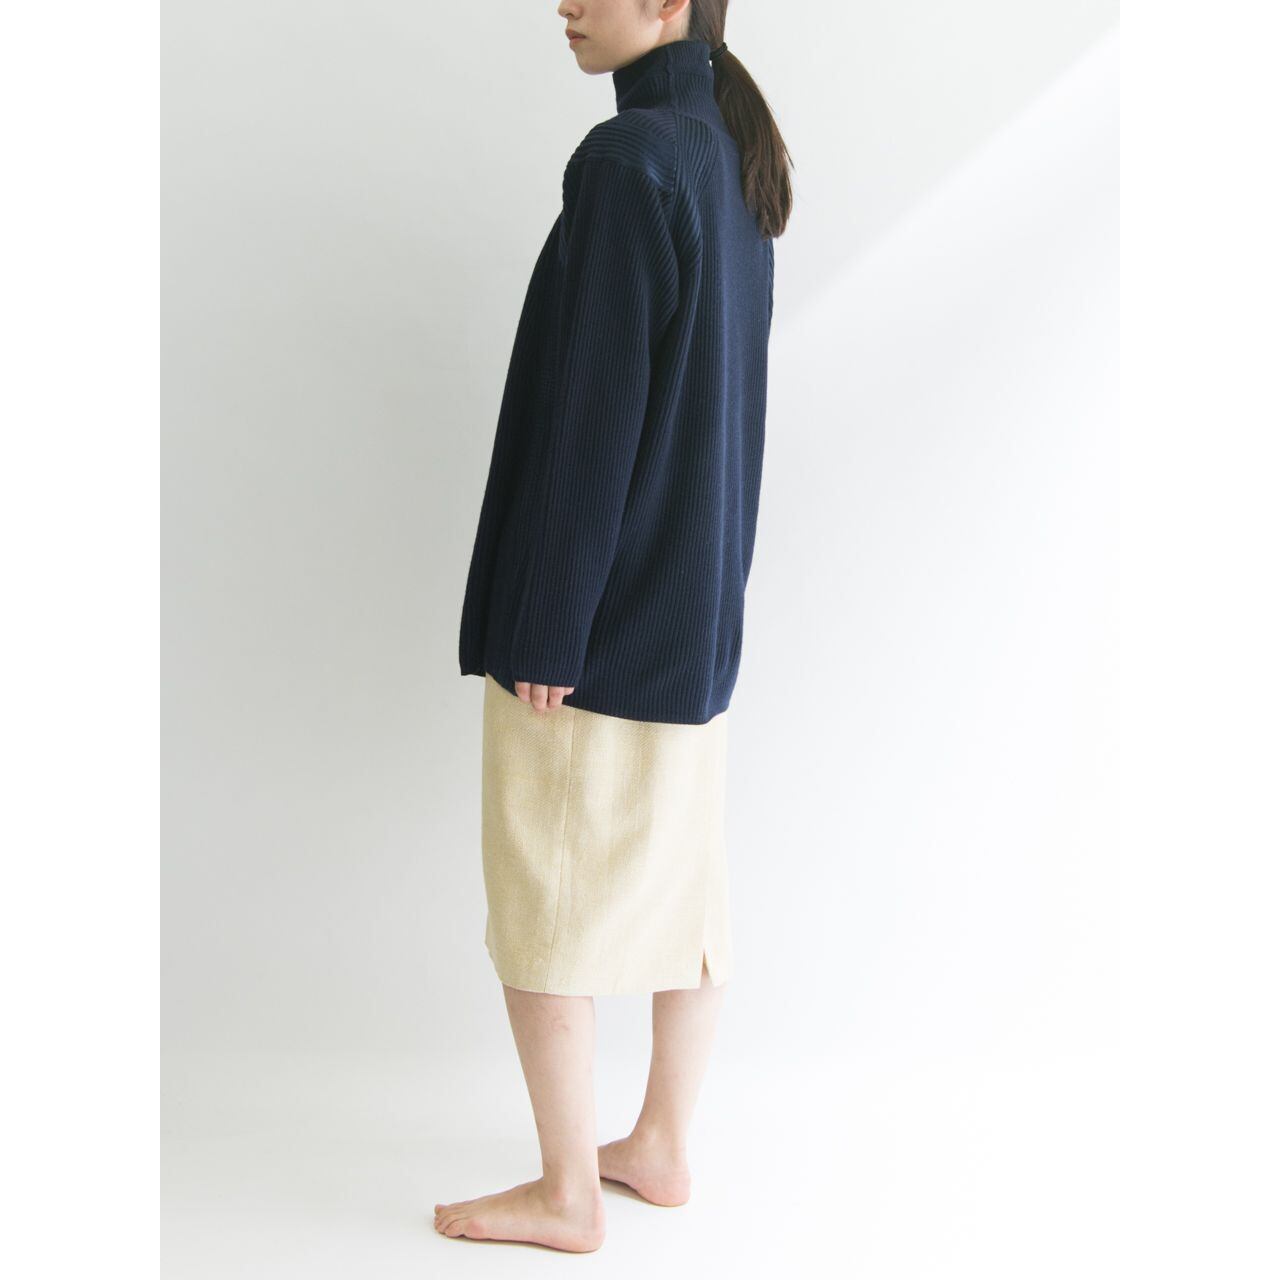 【mila schon】Made in Italy silk classic skirt（ミラショーン イタリア製シルククラシックスカート）4d